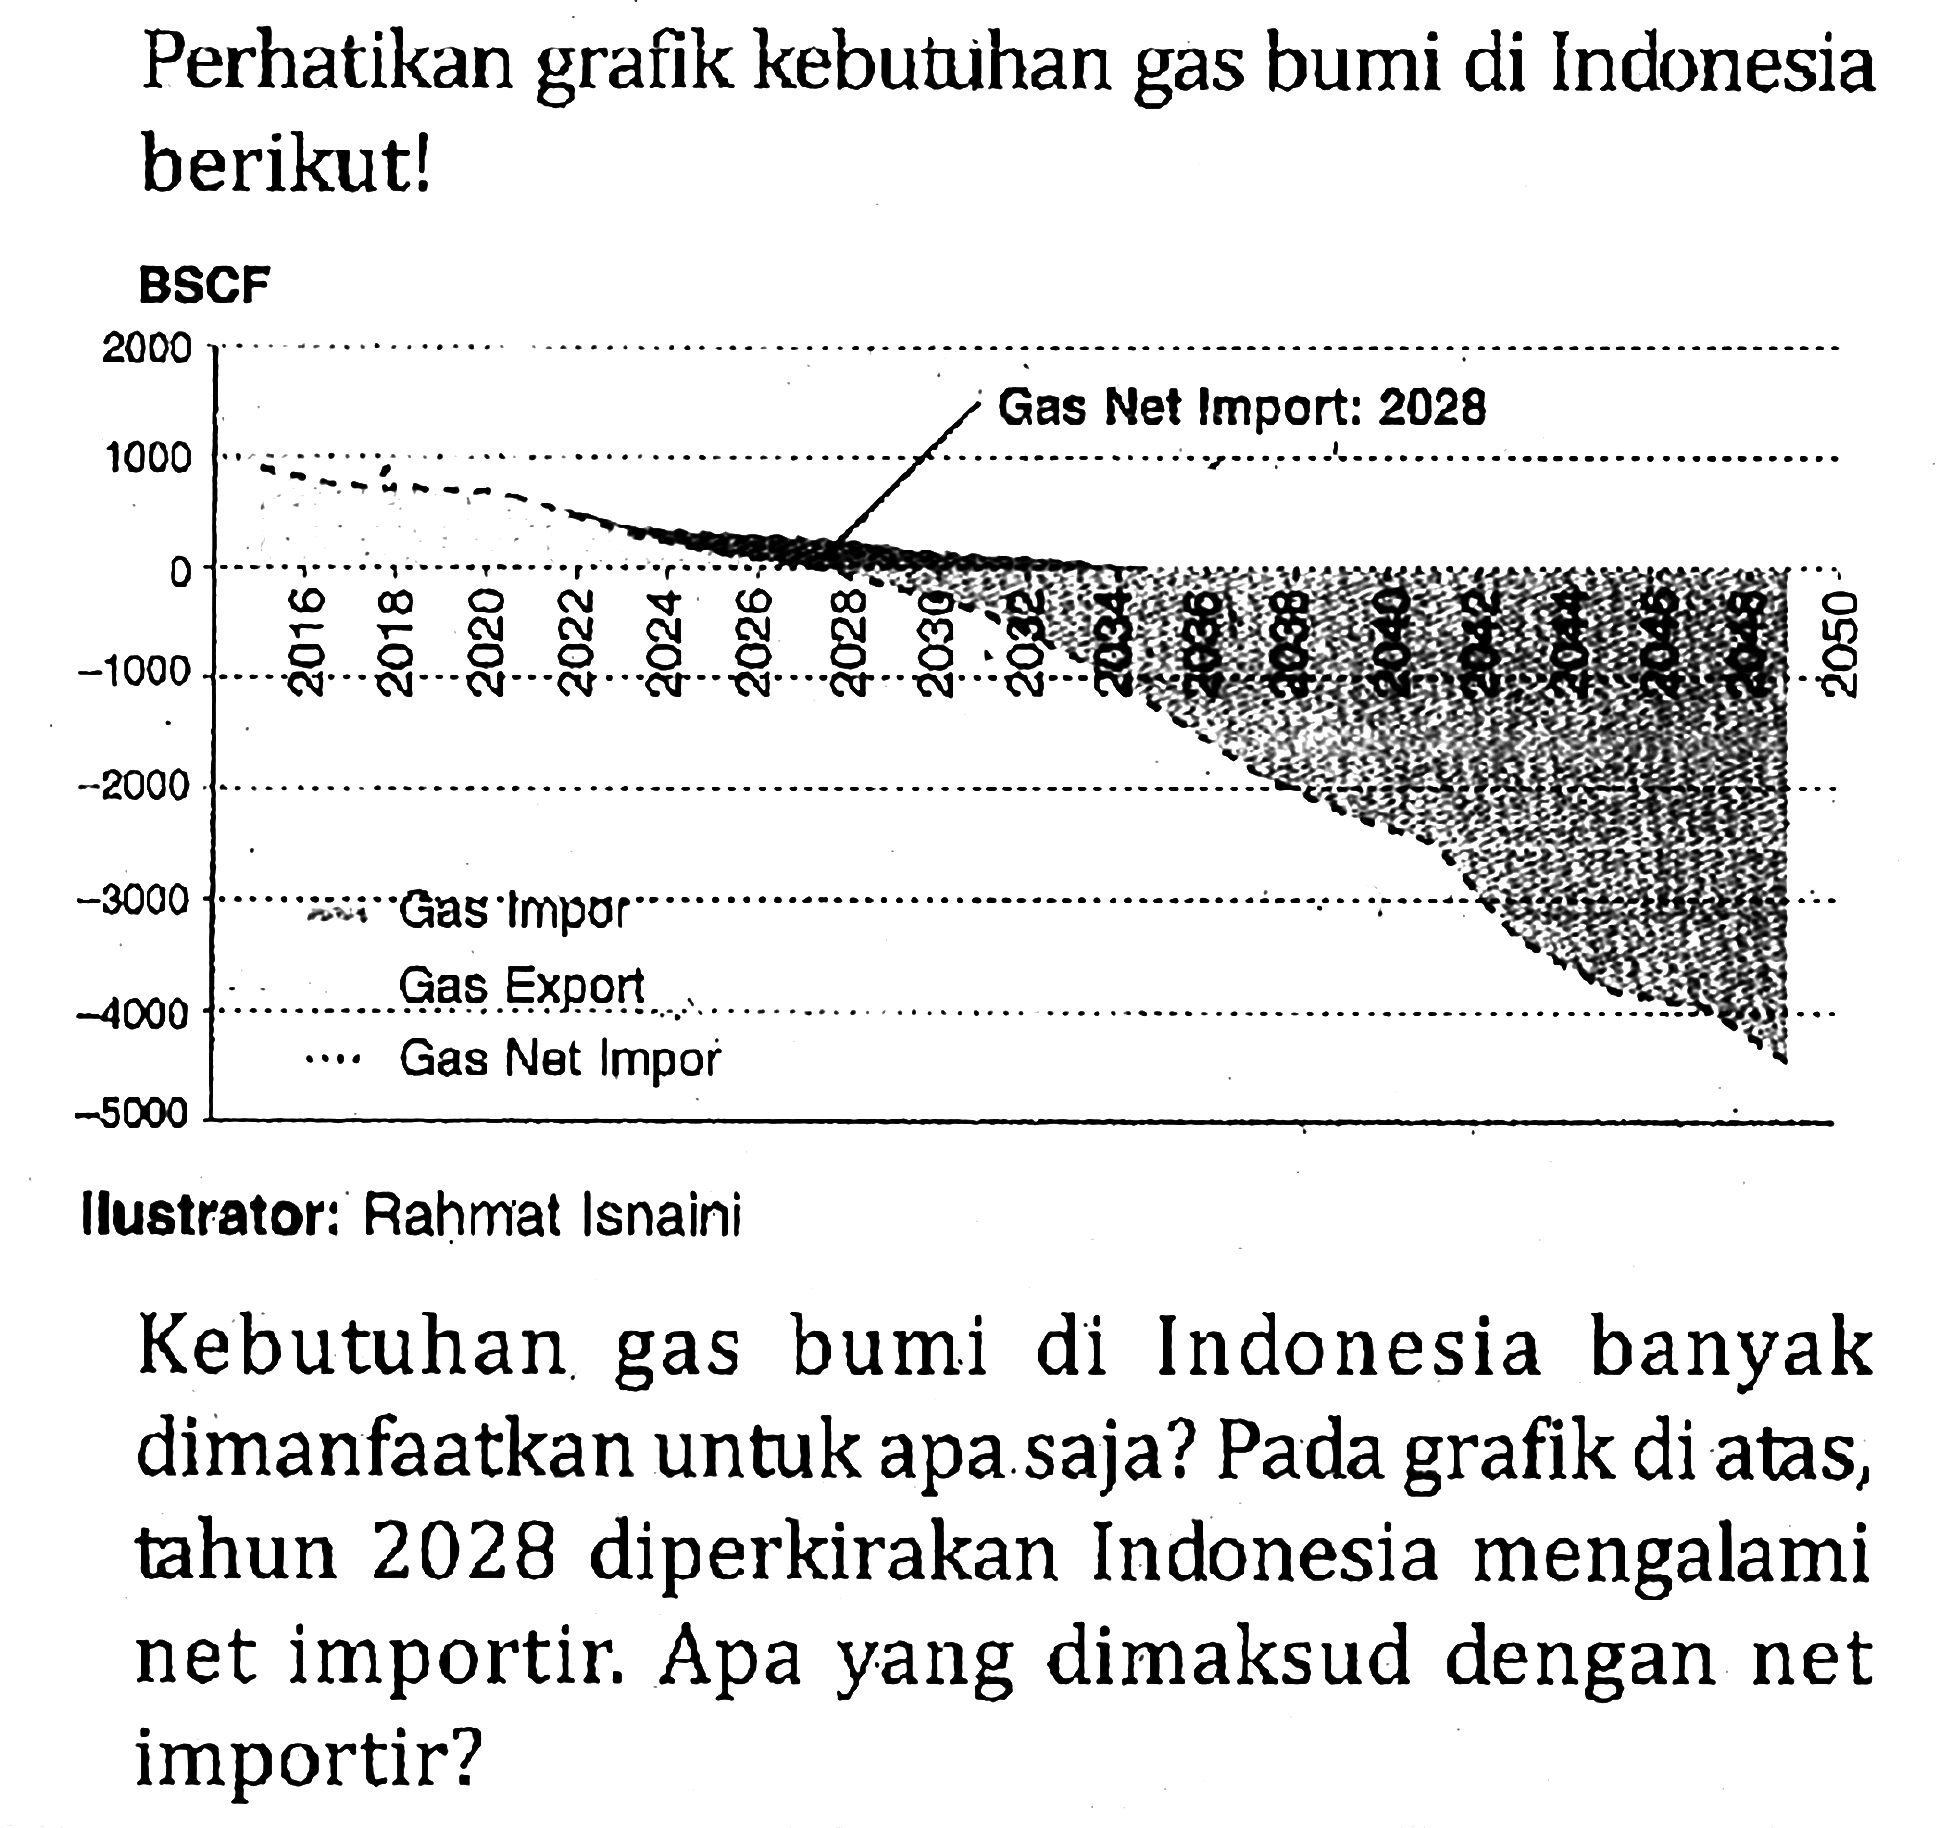 Perhatikan grafik kebutuhan gas bumi di Indonesia berikut! BSCF Gas Net Import: 2028 Gas Impor Gas Export Gas Net Impor Kebutuhan gas bumi di Indonesia banyak dimanfaatkan untuk apa saja? Pada grafik di atas, tahun 2028 diperkirakan Indonesia mengalami net importir. Apa yang dimaksud dengan net importir?